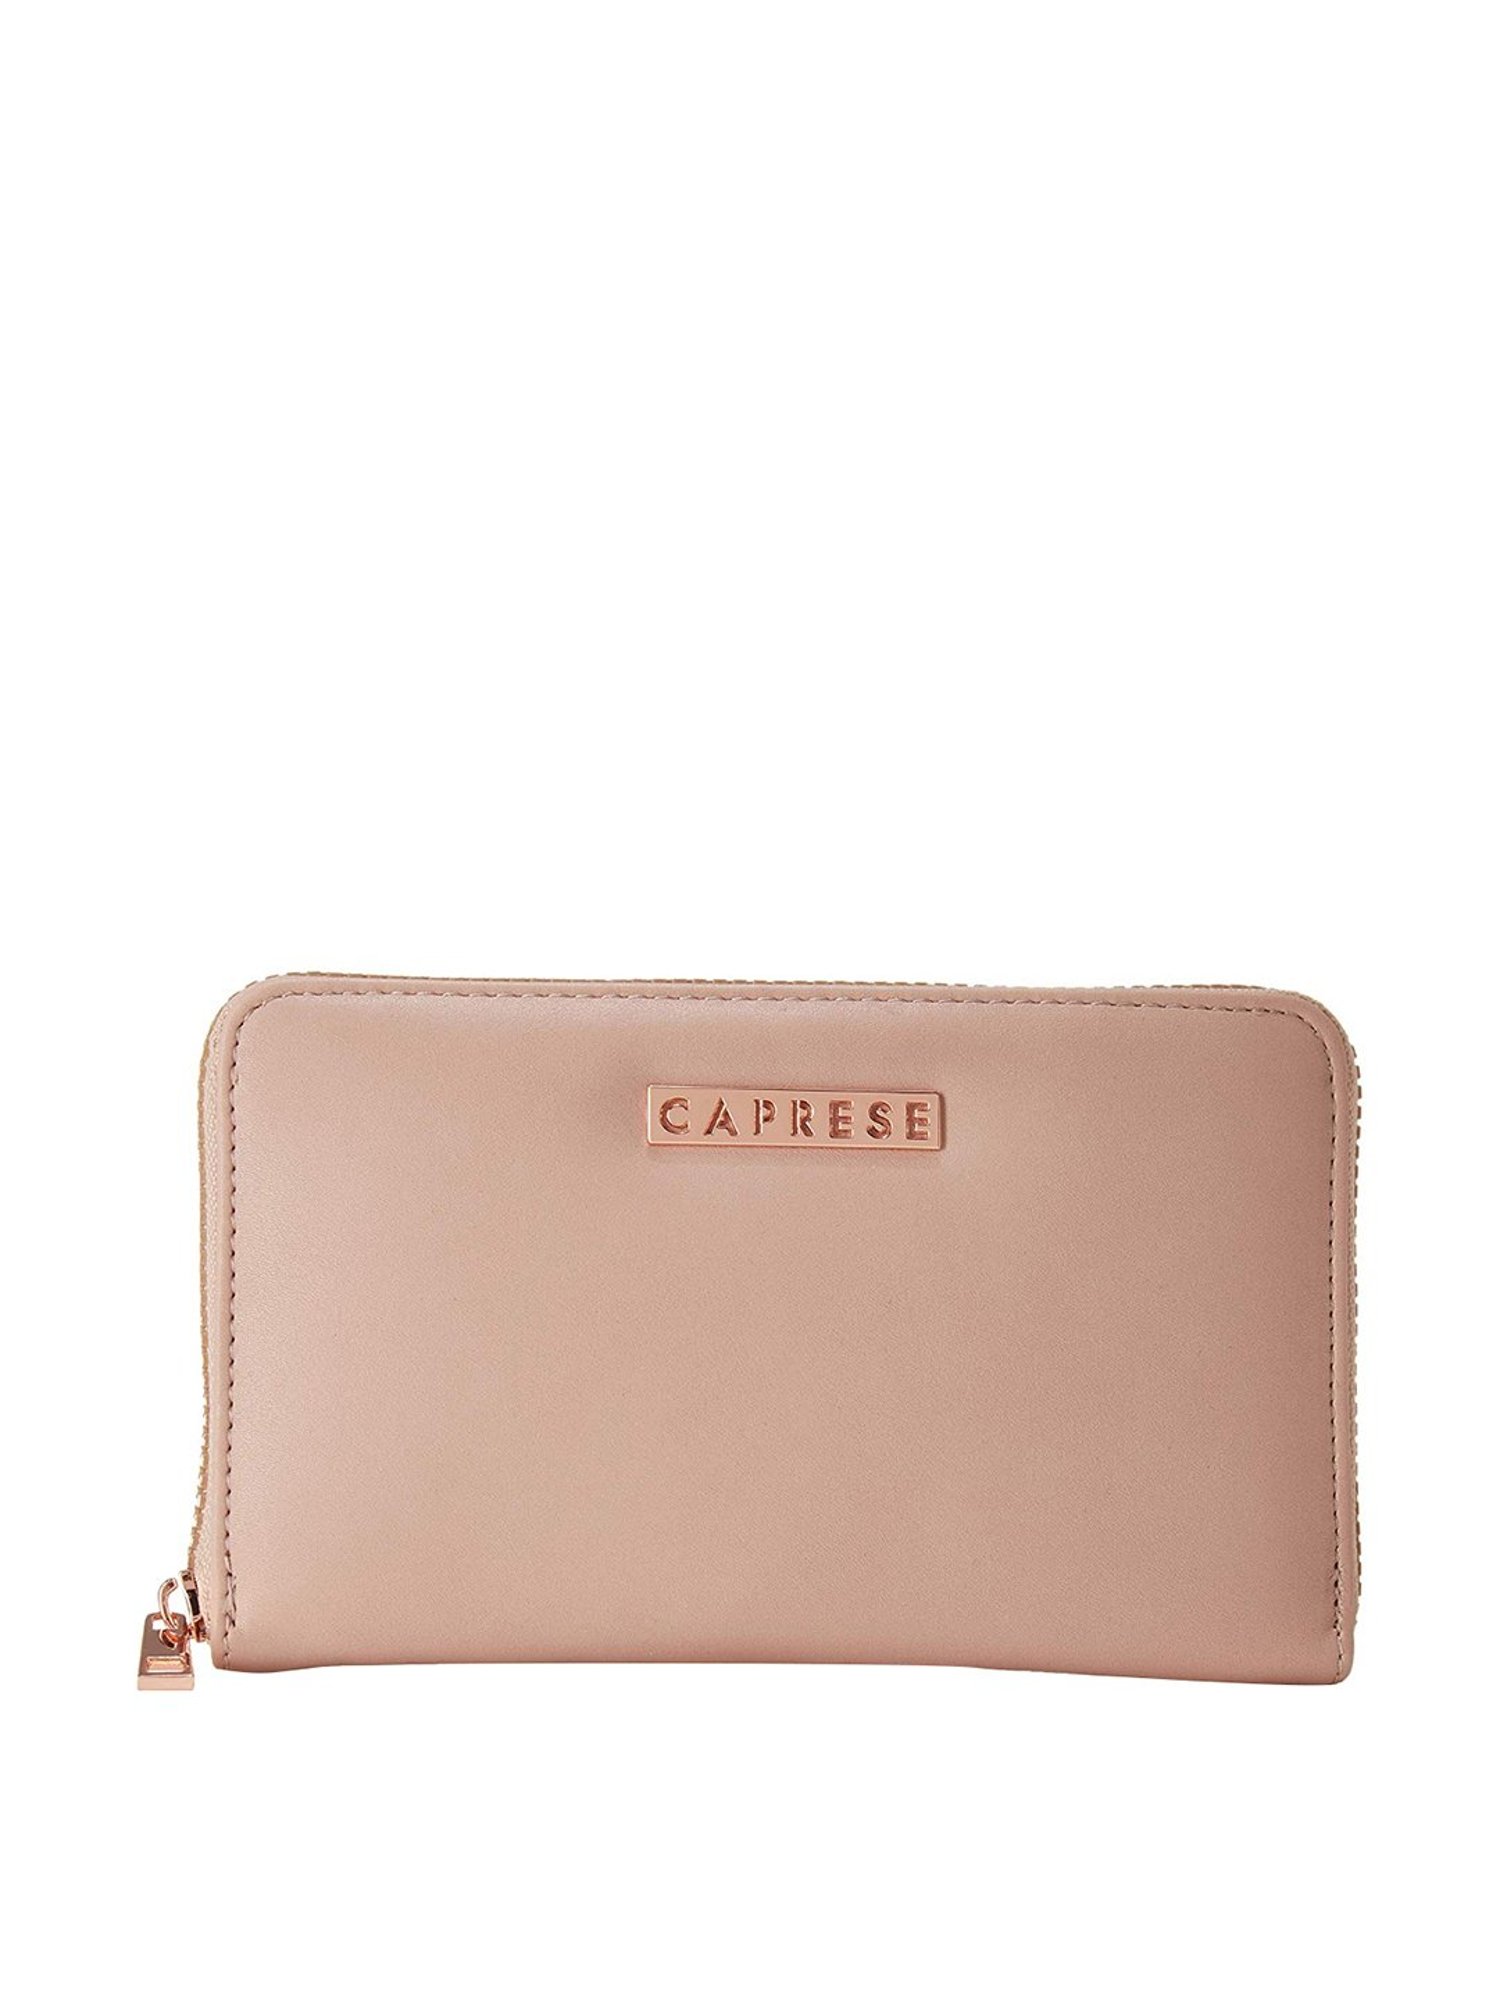 caprese zip around wallet